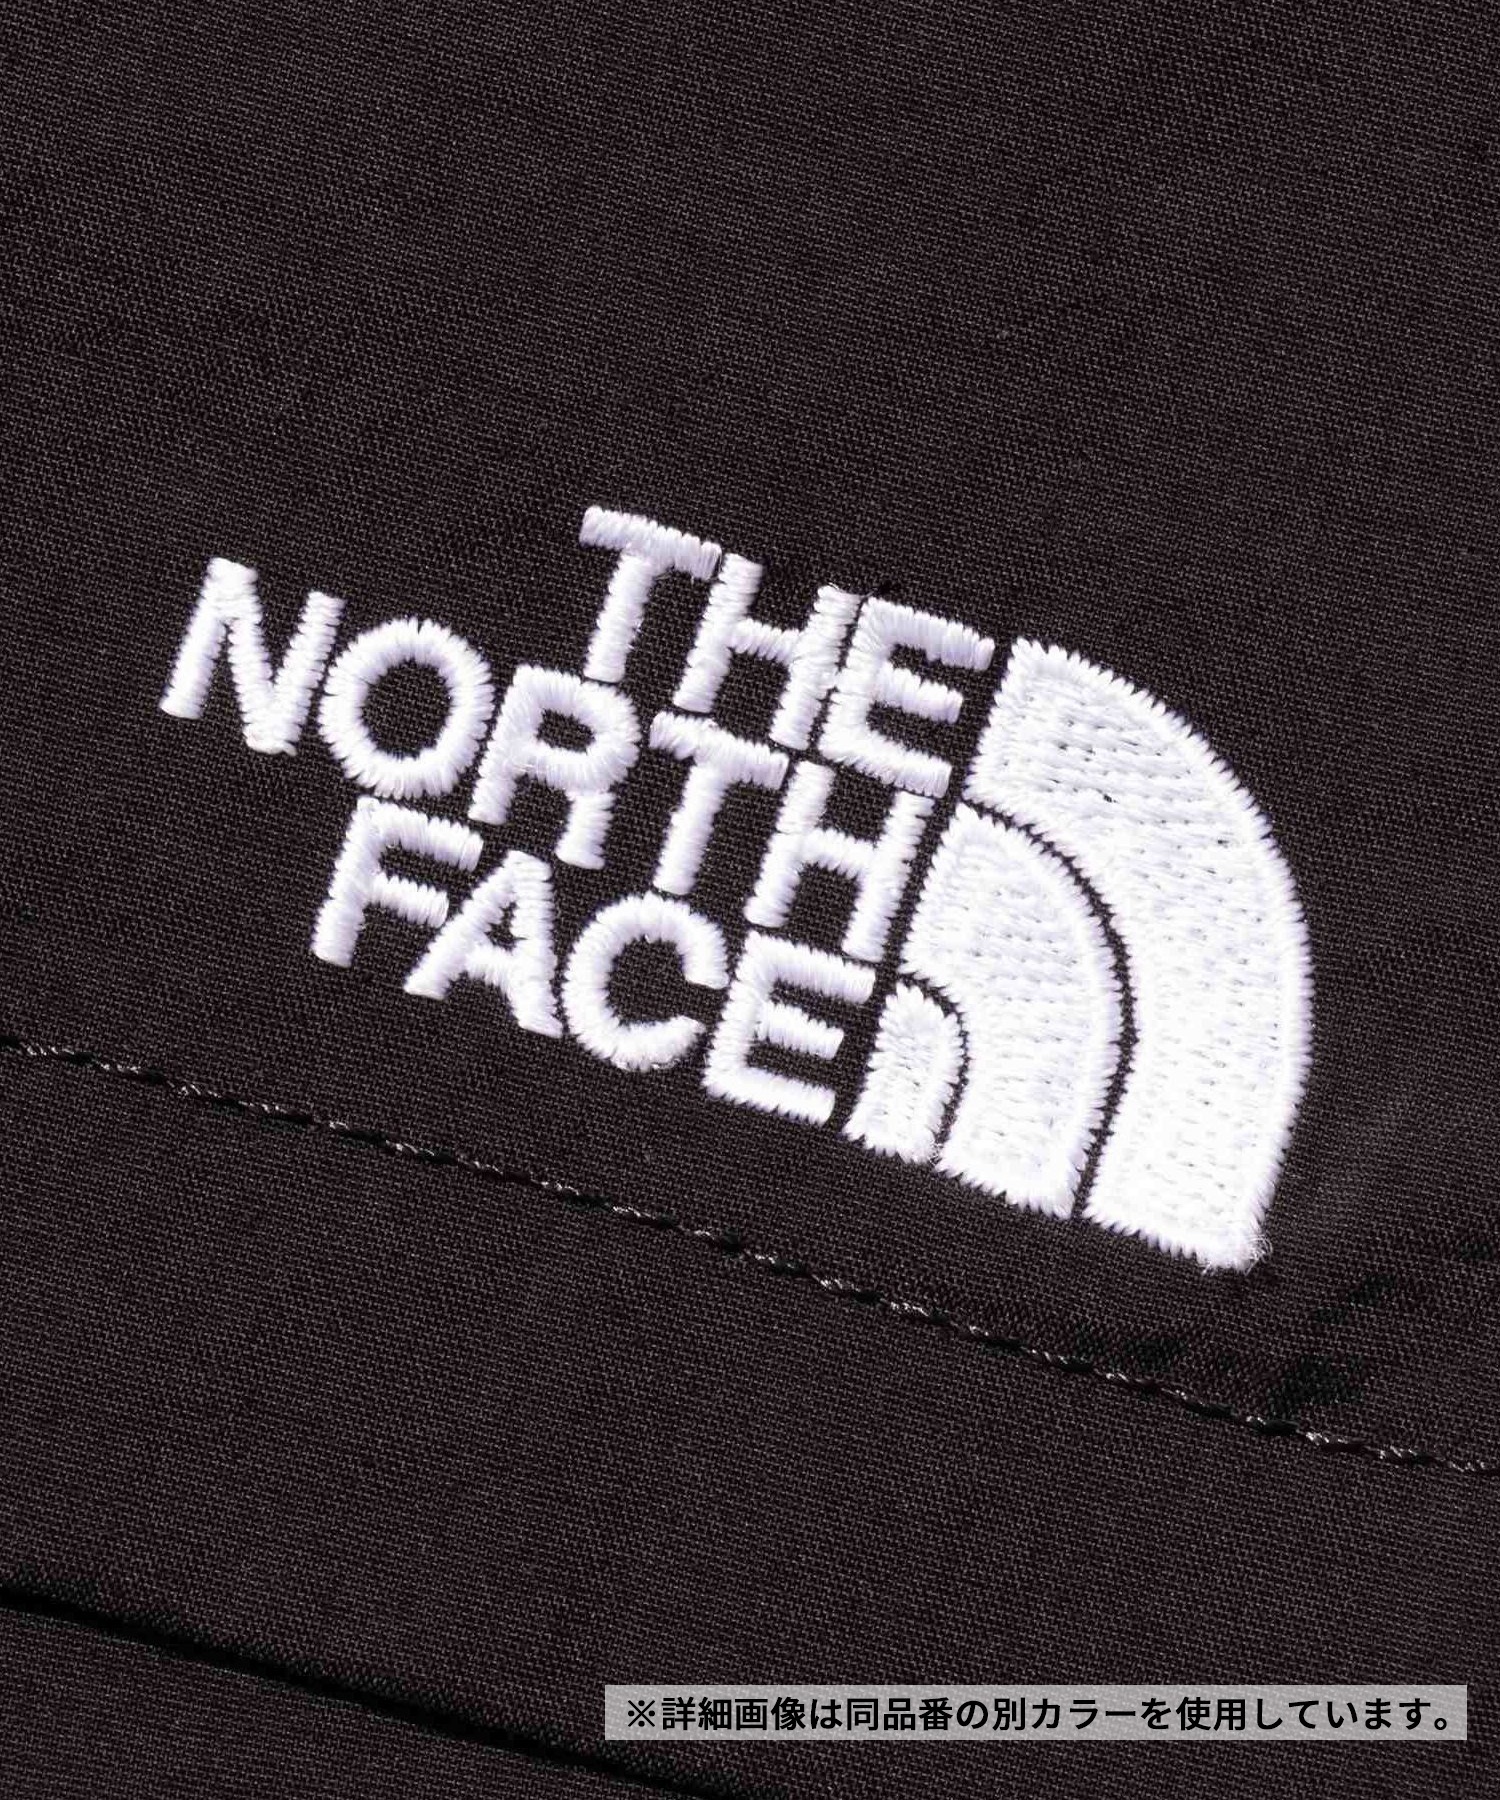 THE NORTH FACE ザ・ノース・フェイス メンズ バーサタイルミッド ショーツ ハーフパンツ 撥水 UVカット NB42331 GA(GA-S)